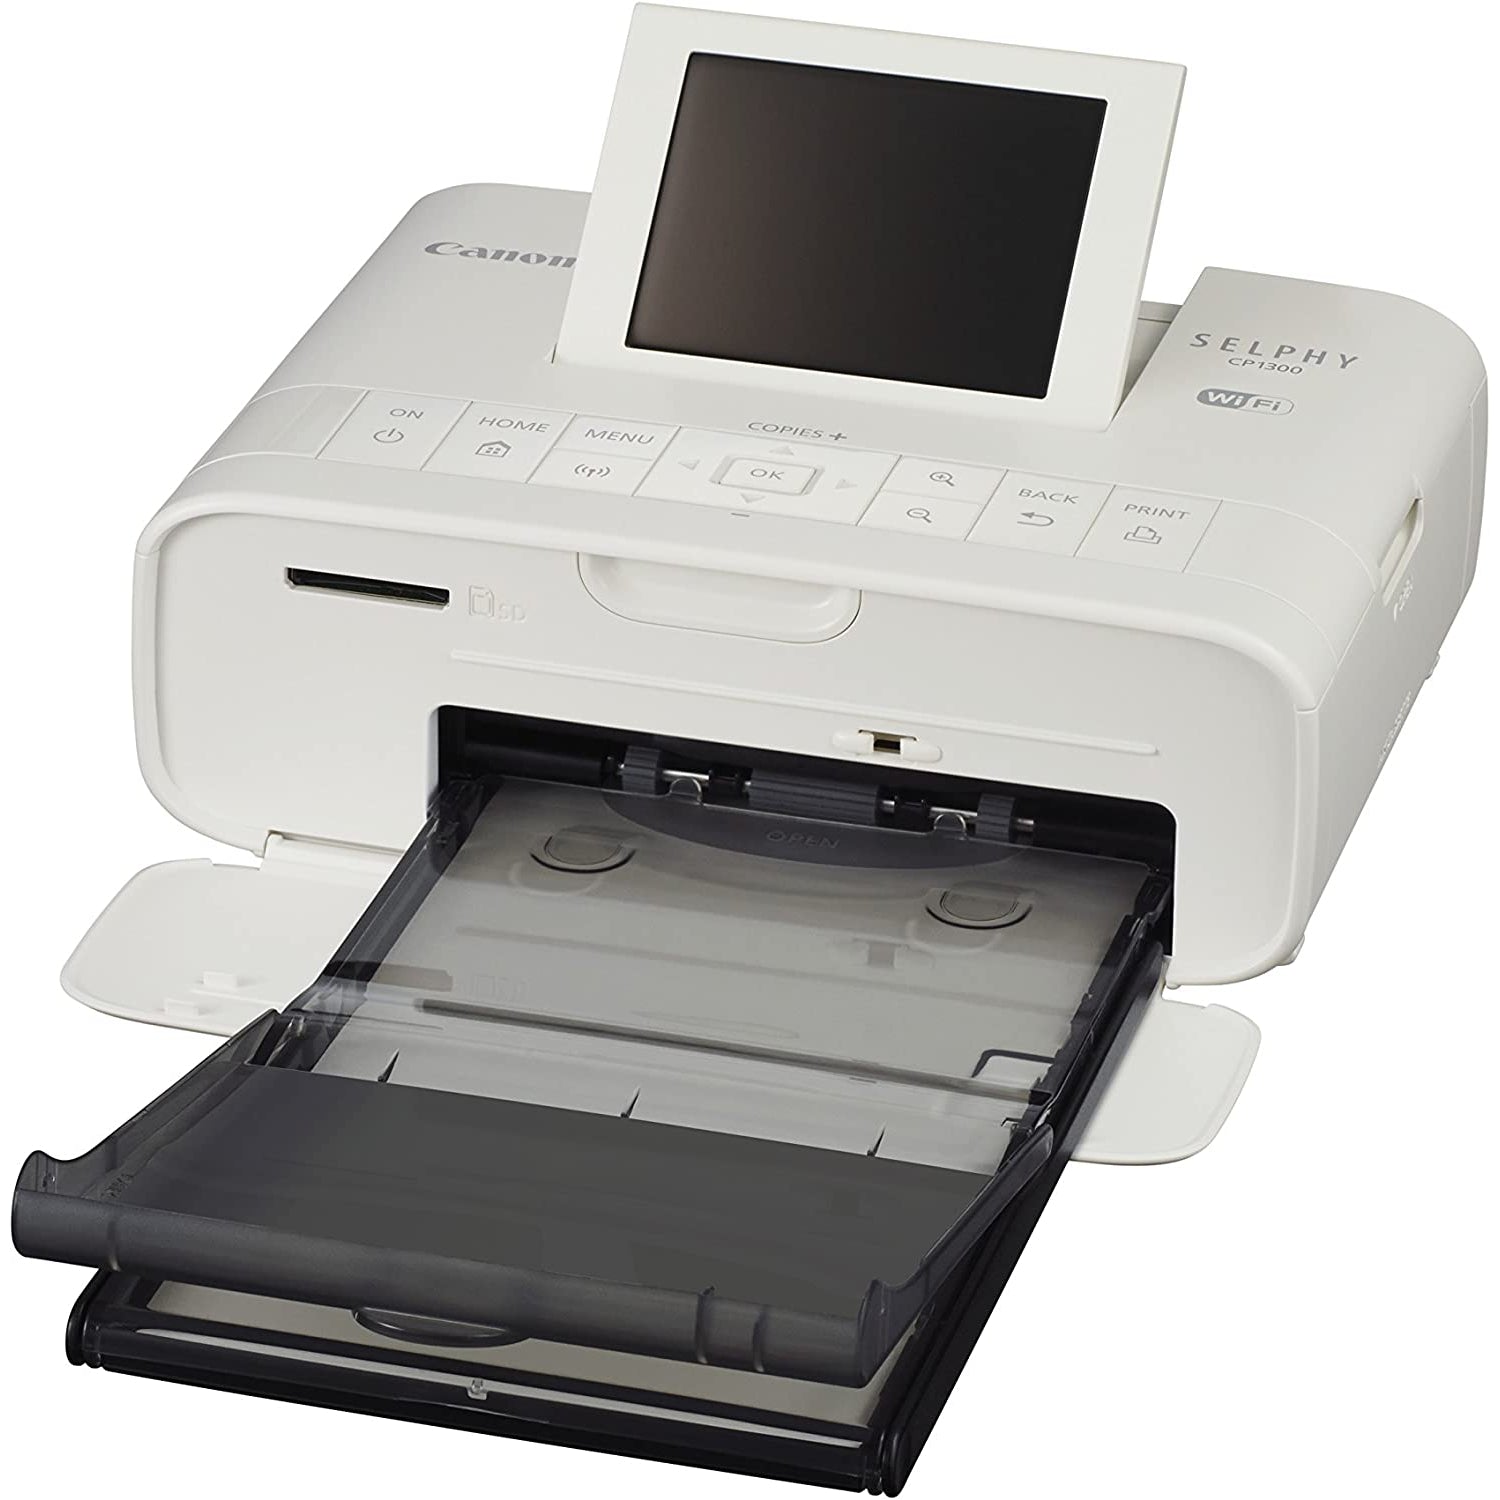 Canon Selphy CP1300 Compact Photo Printer